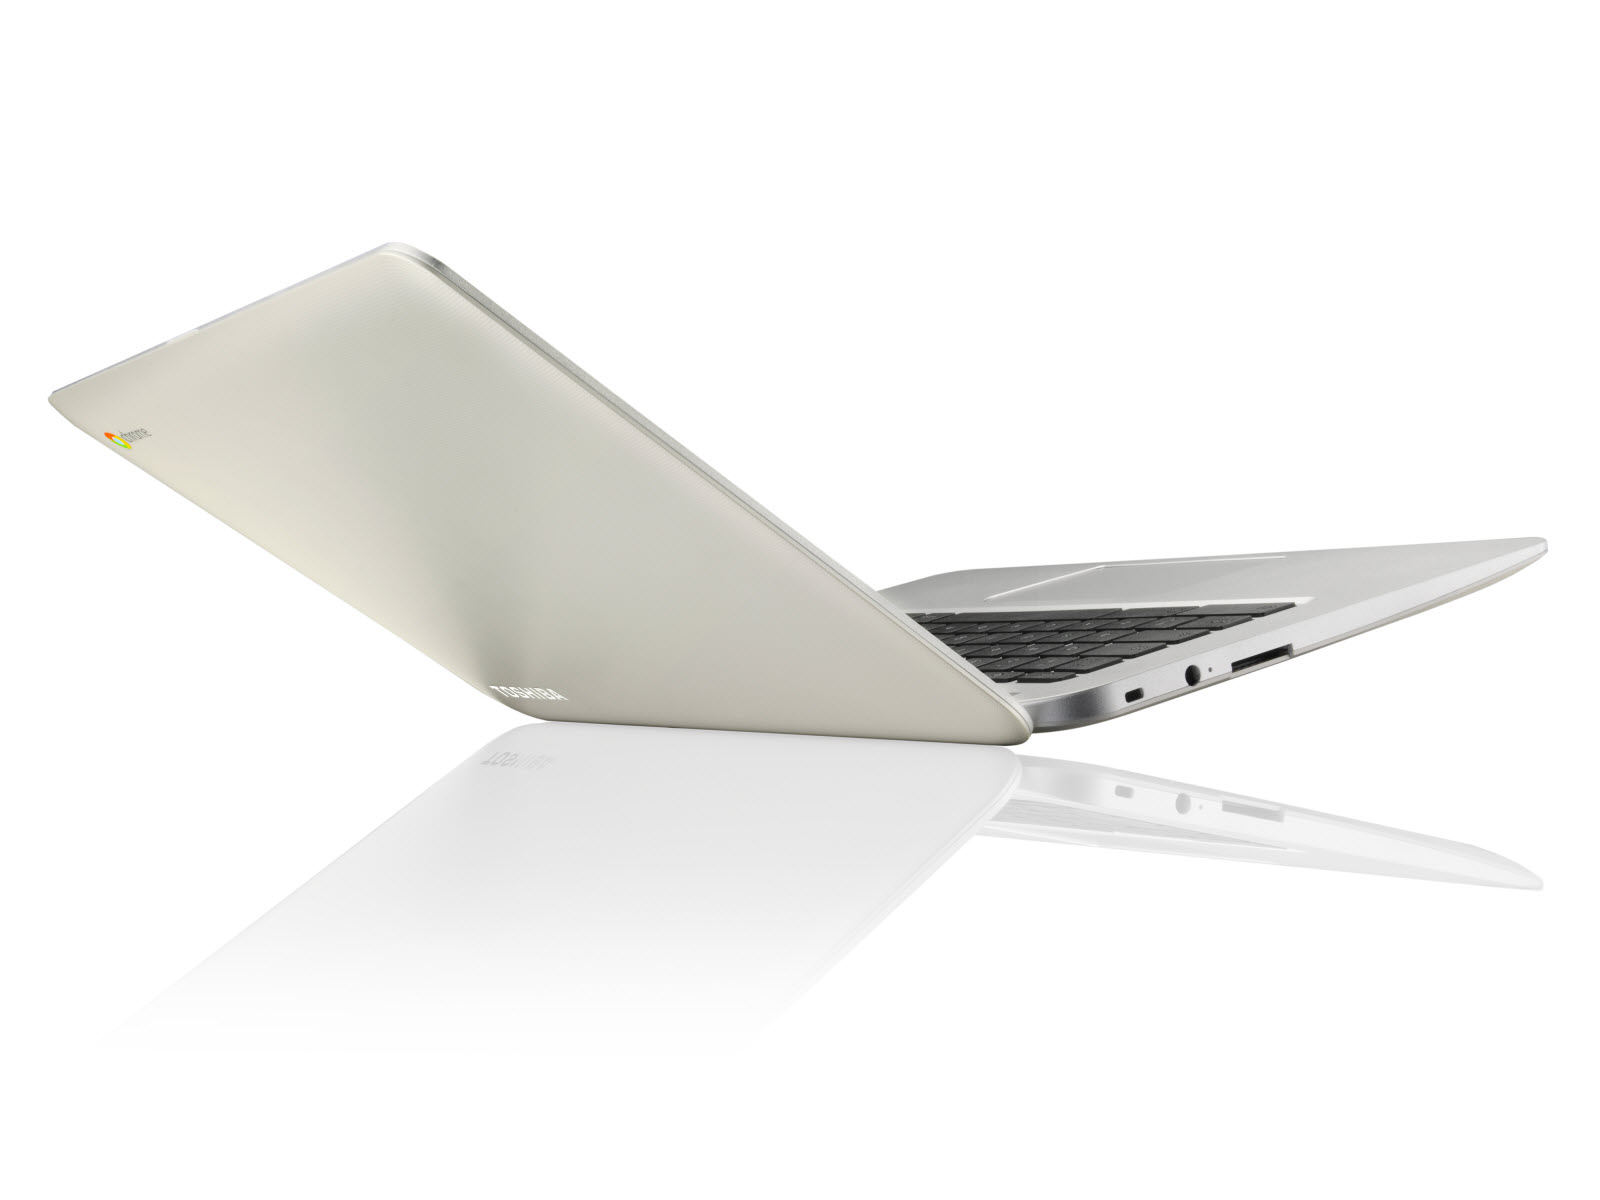 #CES2014 : Toshiba présente son premier Chromebook et à moins de 300€